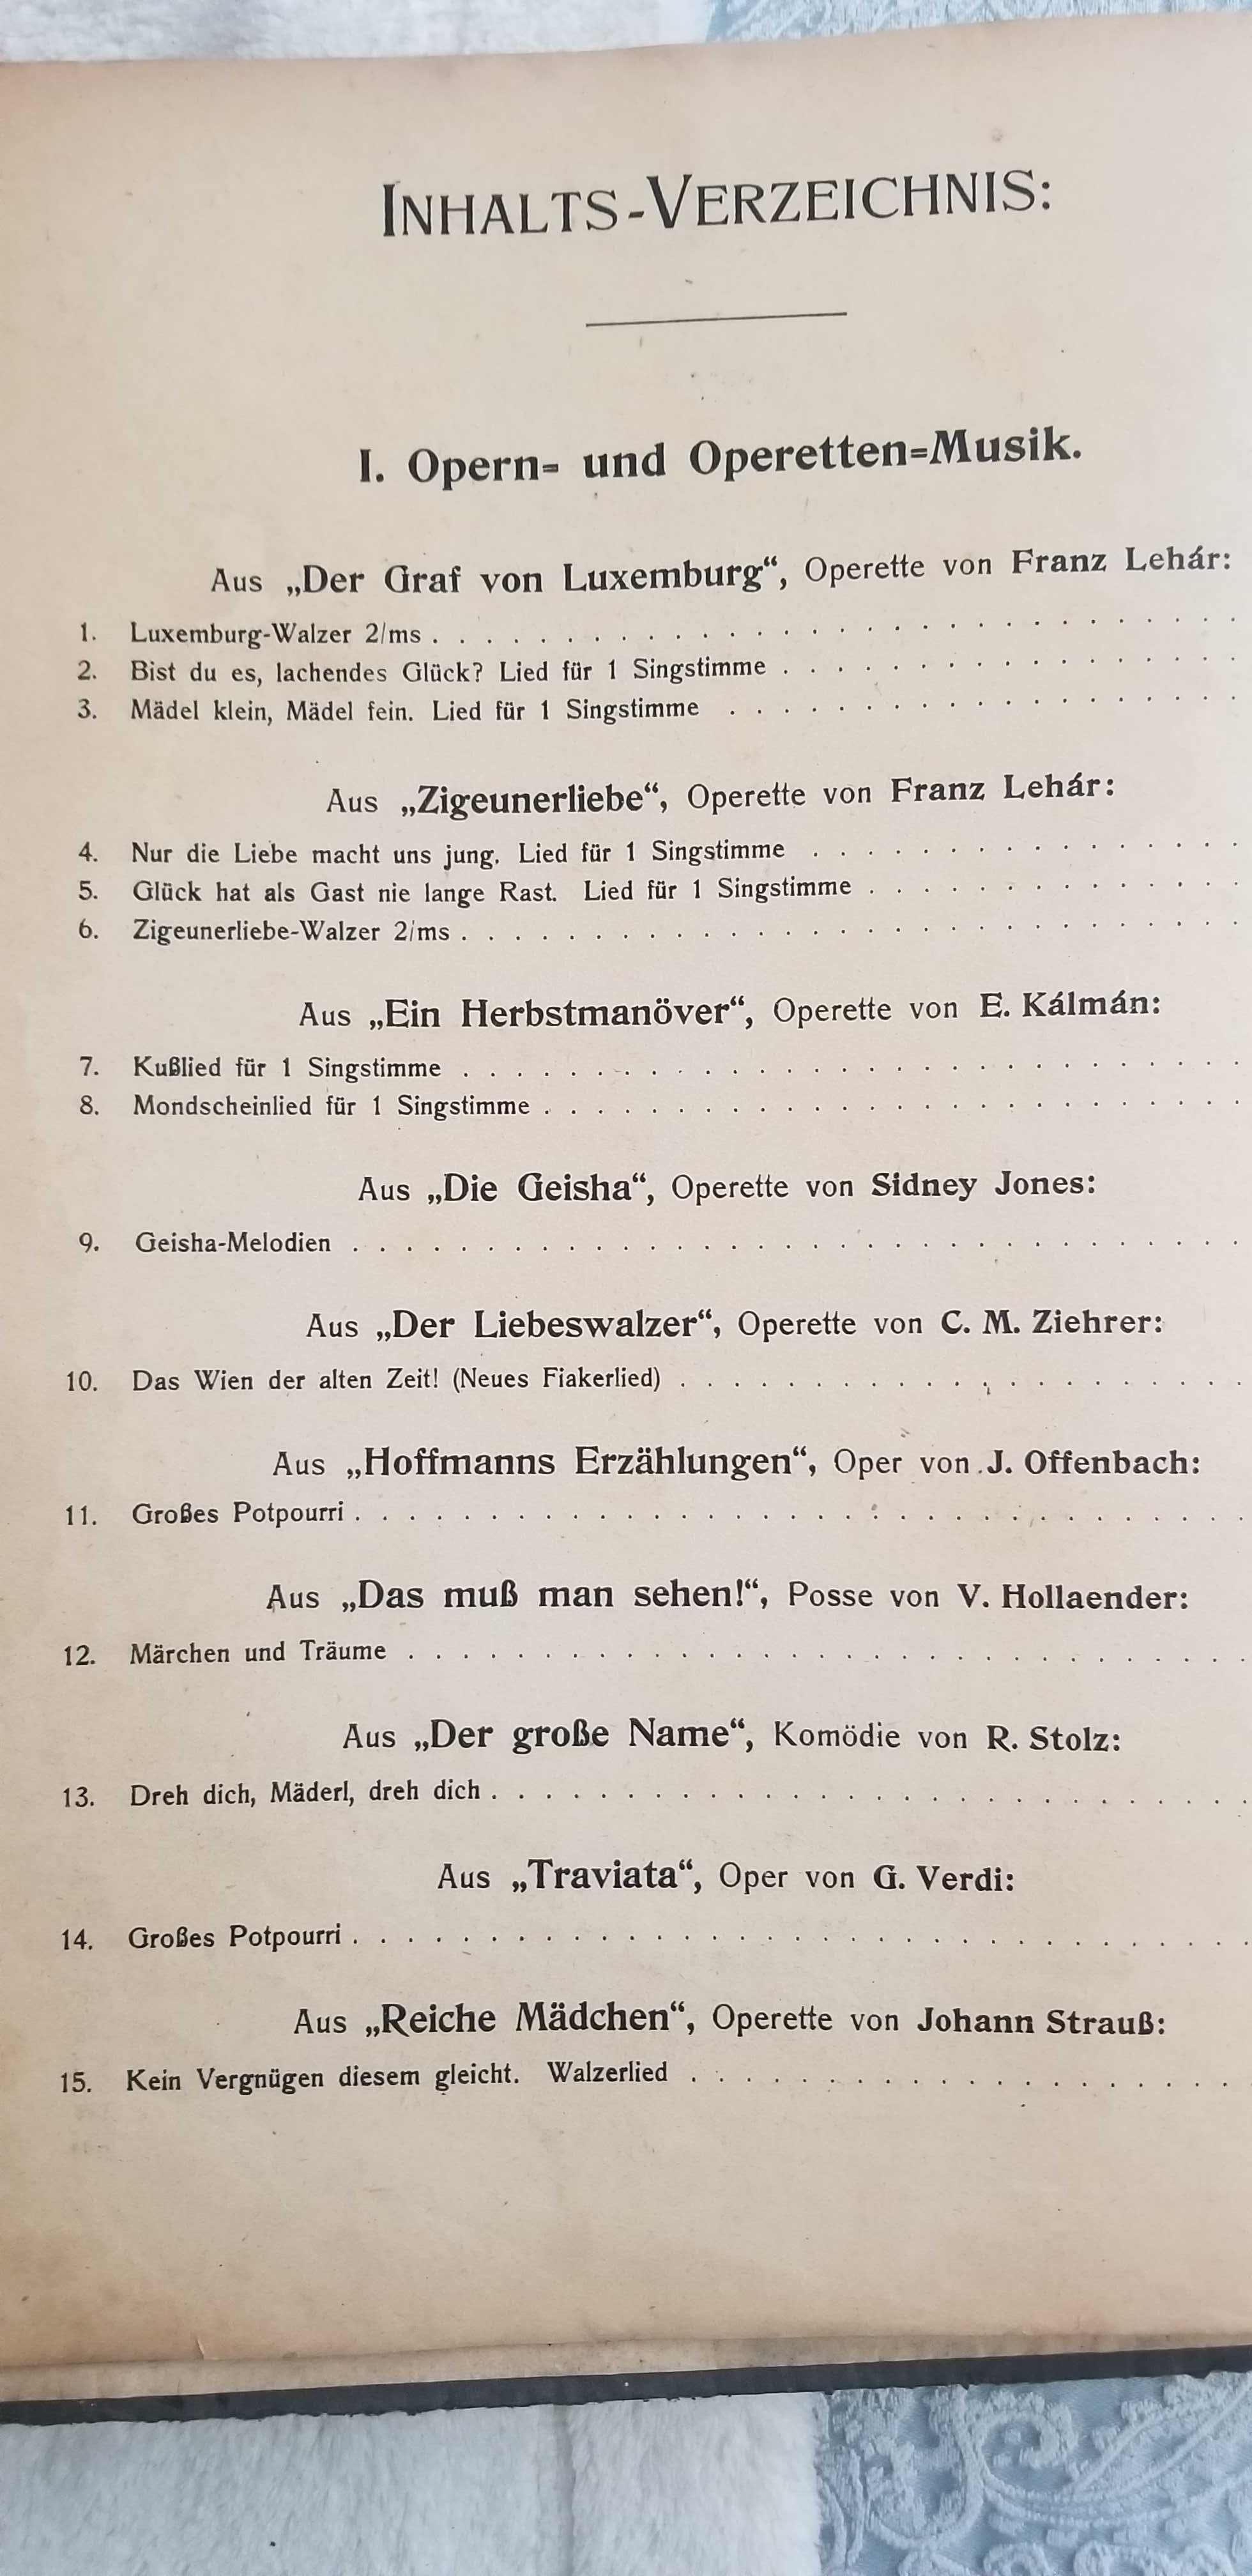 Musikalifche Edelsteine Band 2  -- 42 utwory na fortepian  nut z 1909r